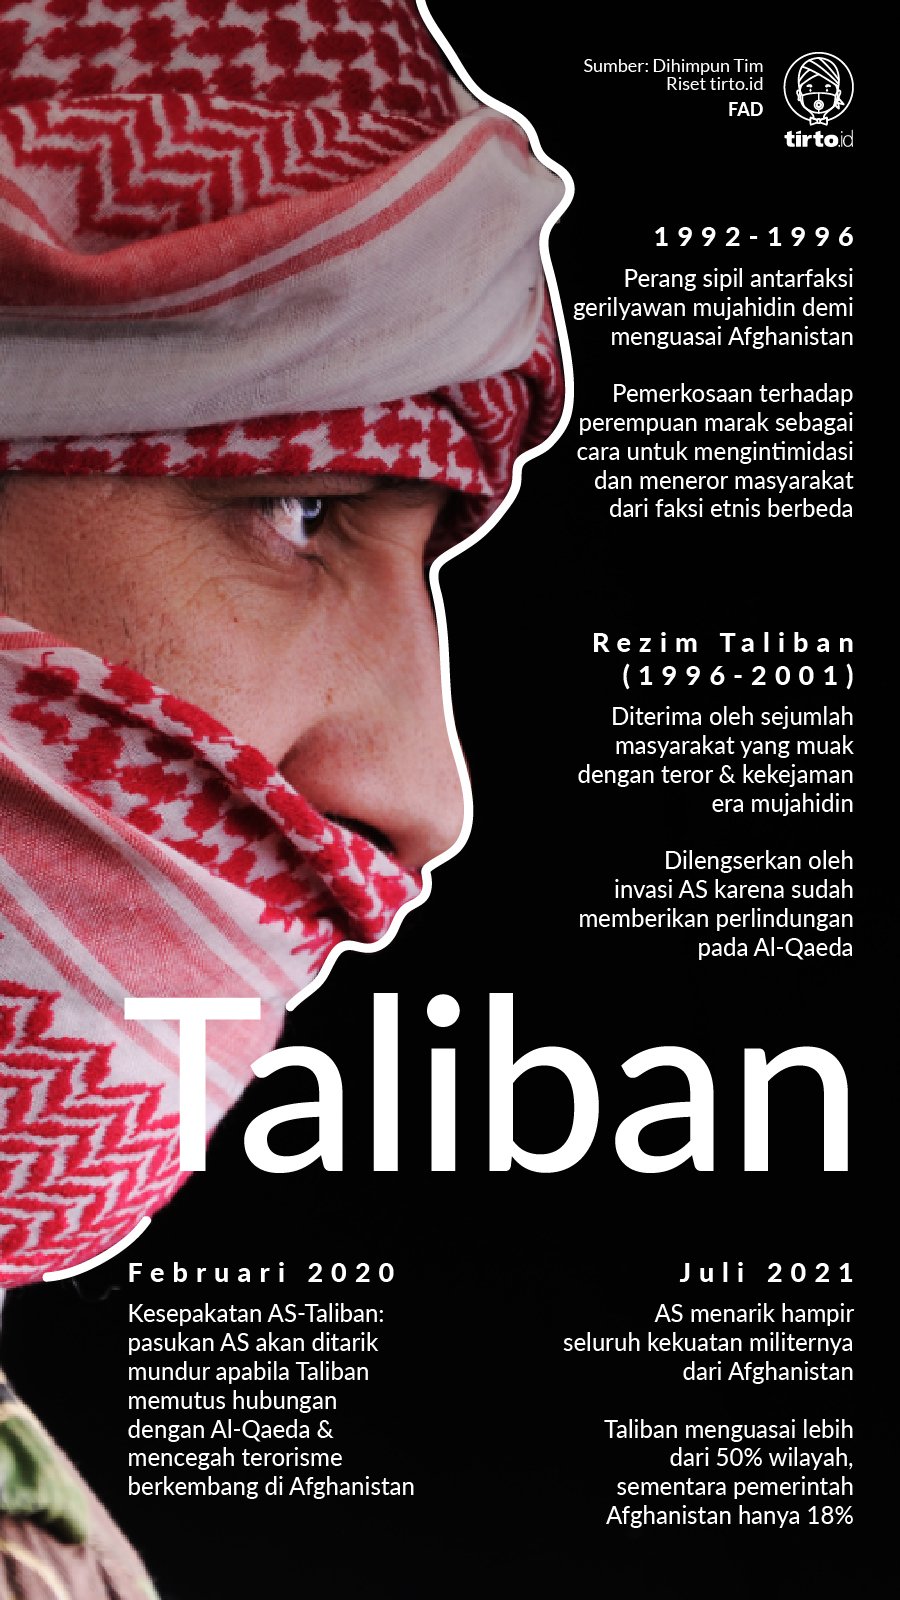 Taliban maksud